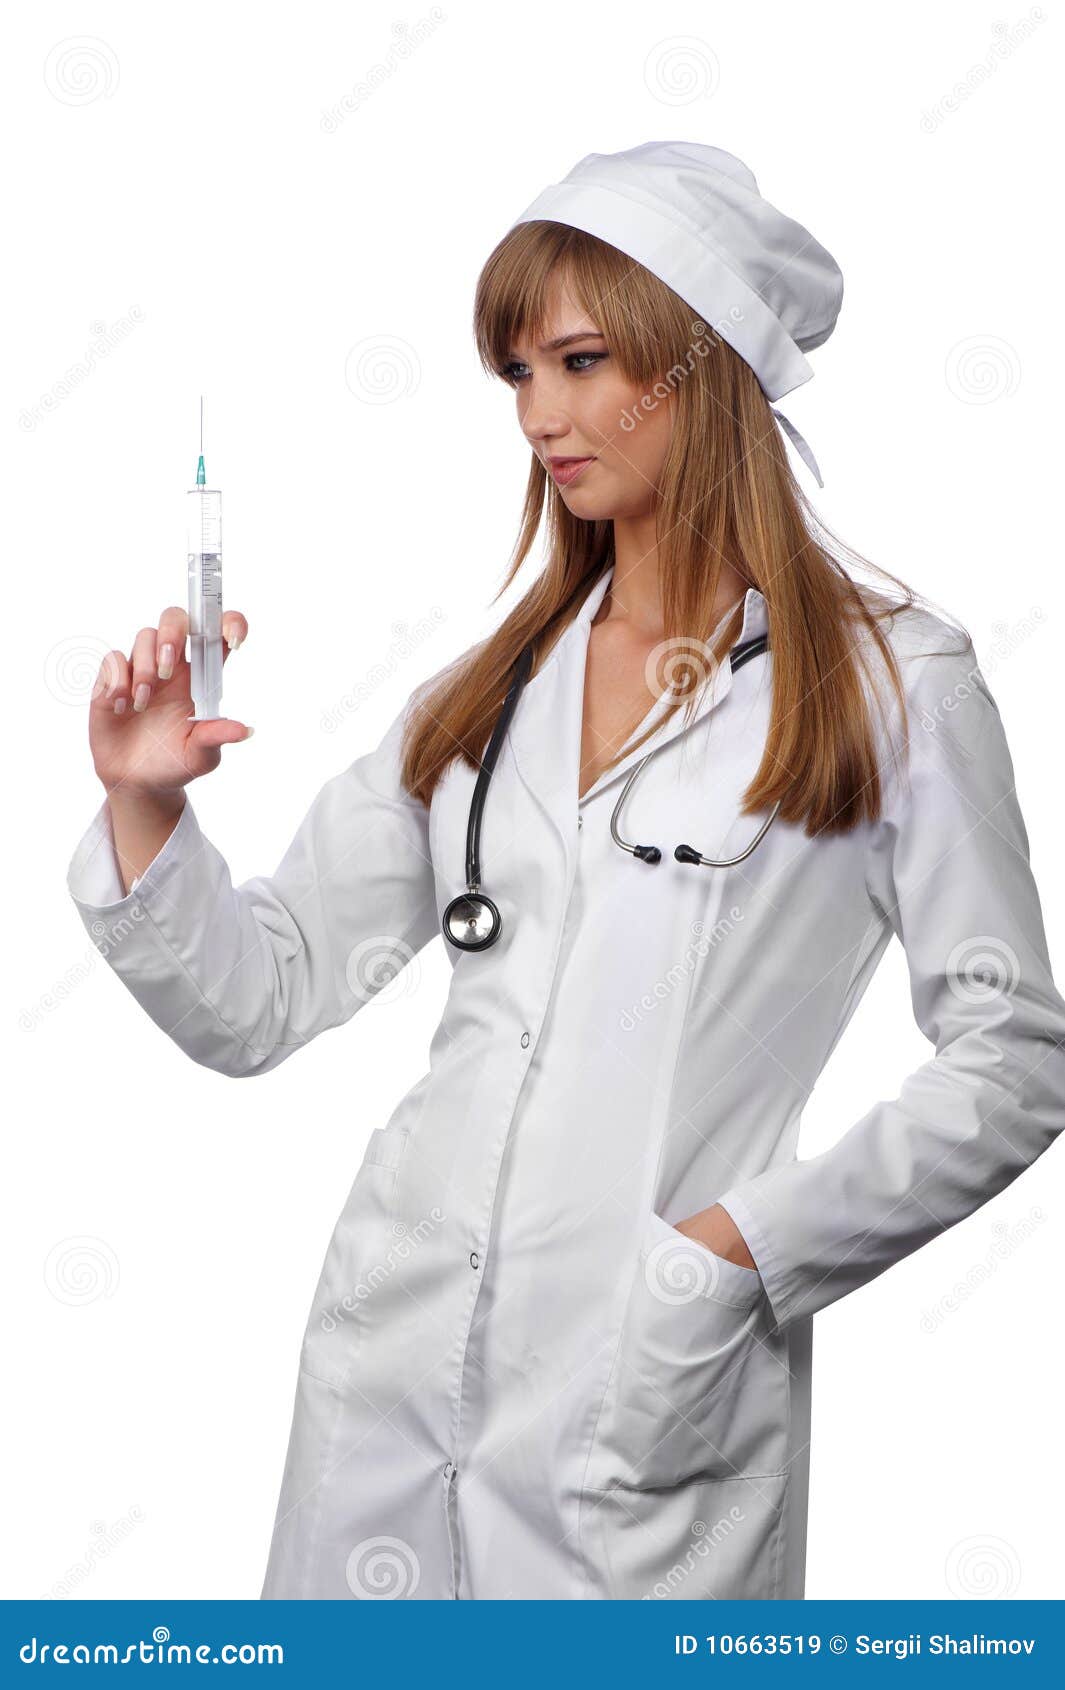 attractive-nurse-10663519.jpg